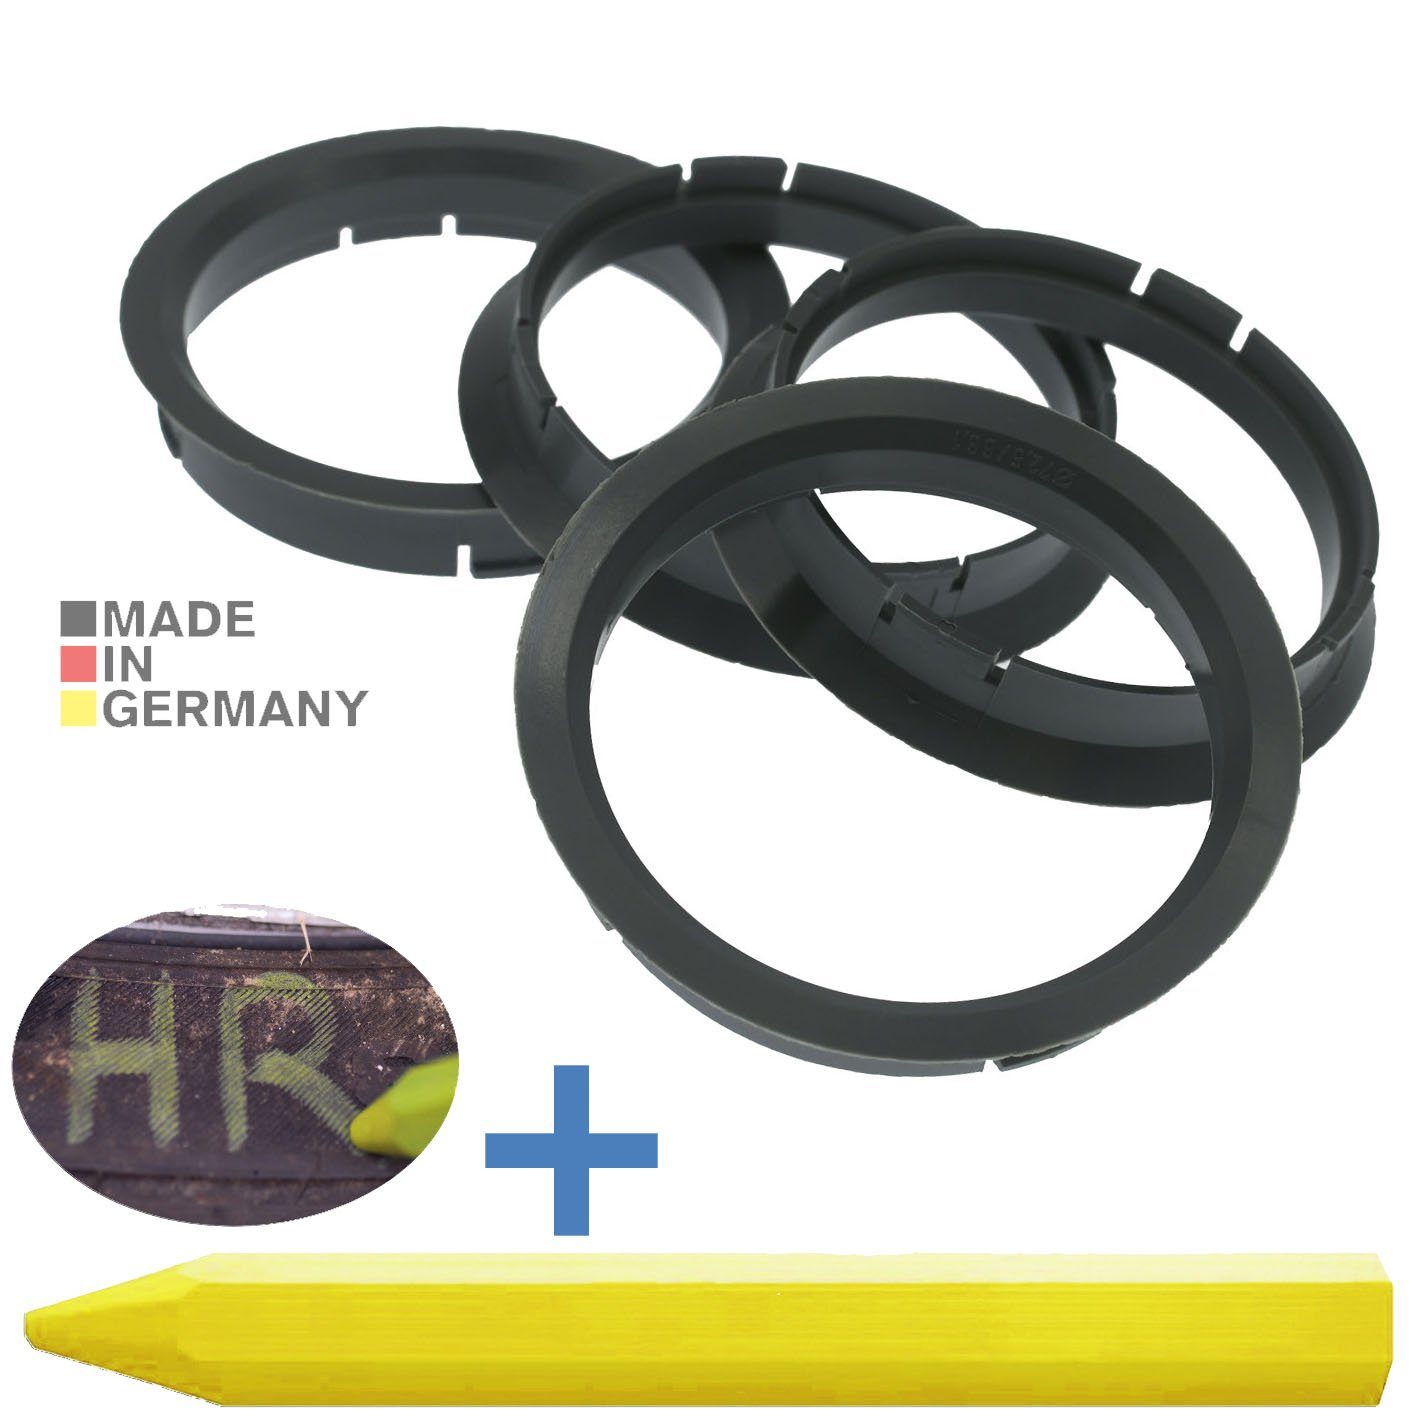 RKC Reifenstift 4X Zentrierringe Grau Felgen Ringe + 1x Reifen Kreide Fett Stift, Maße: 72,5 x 66,1 mm